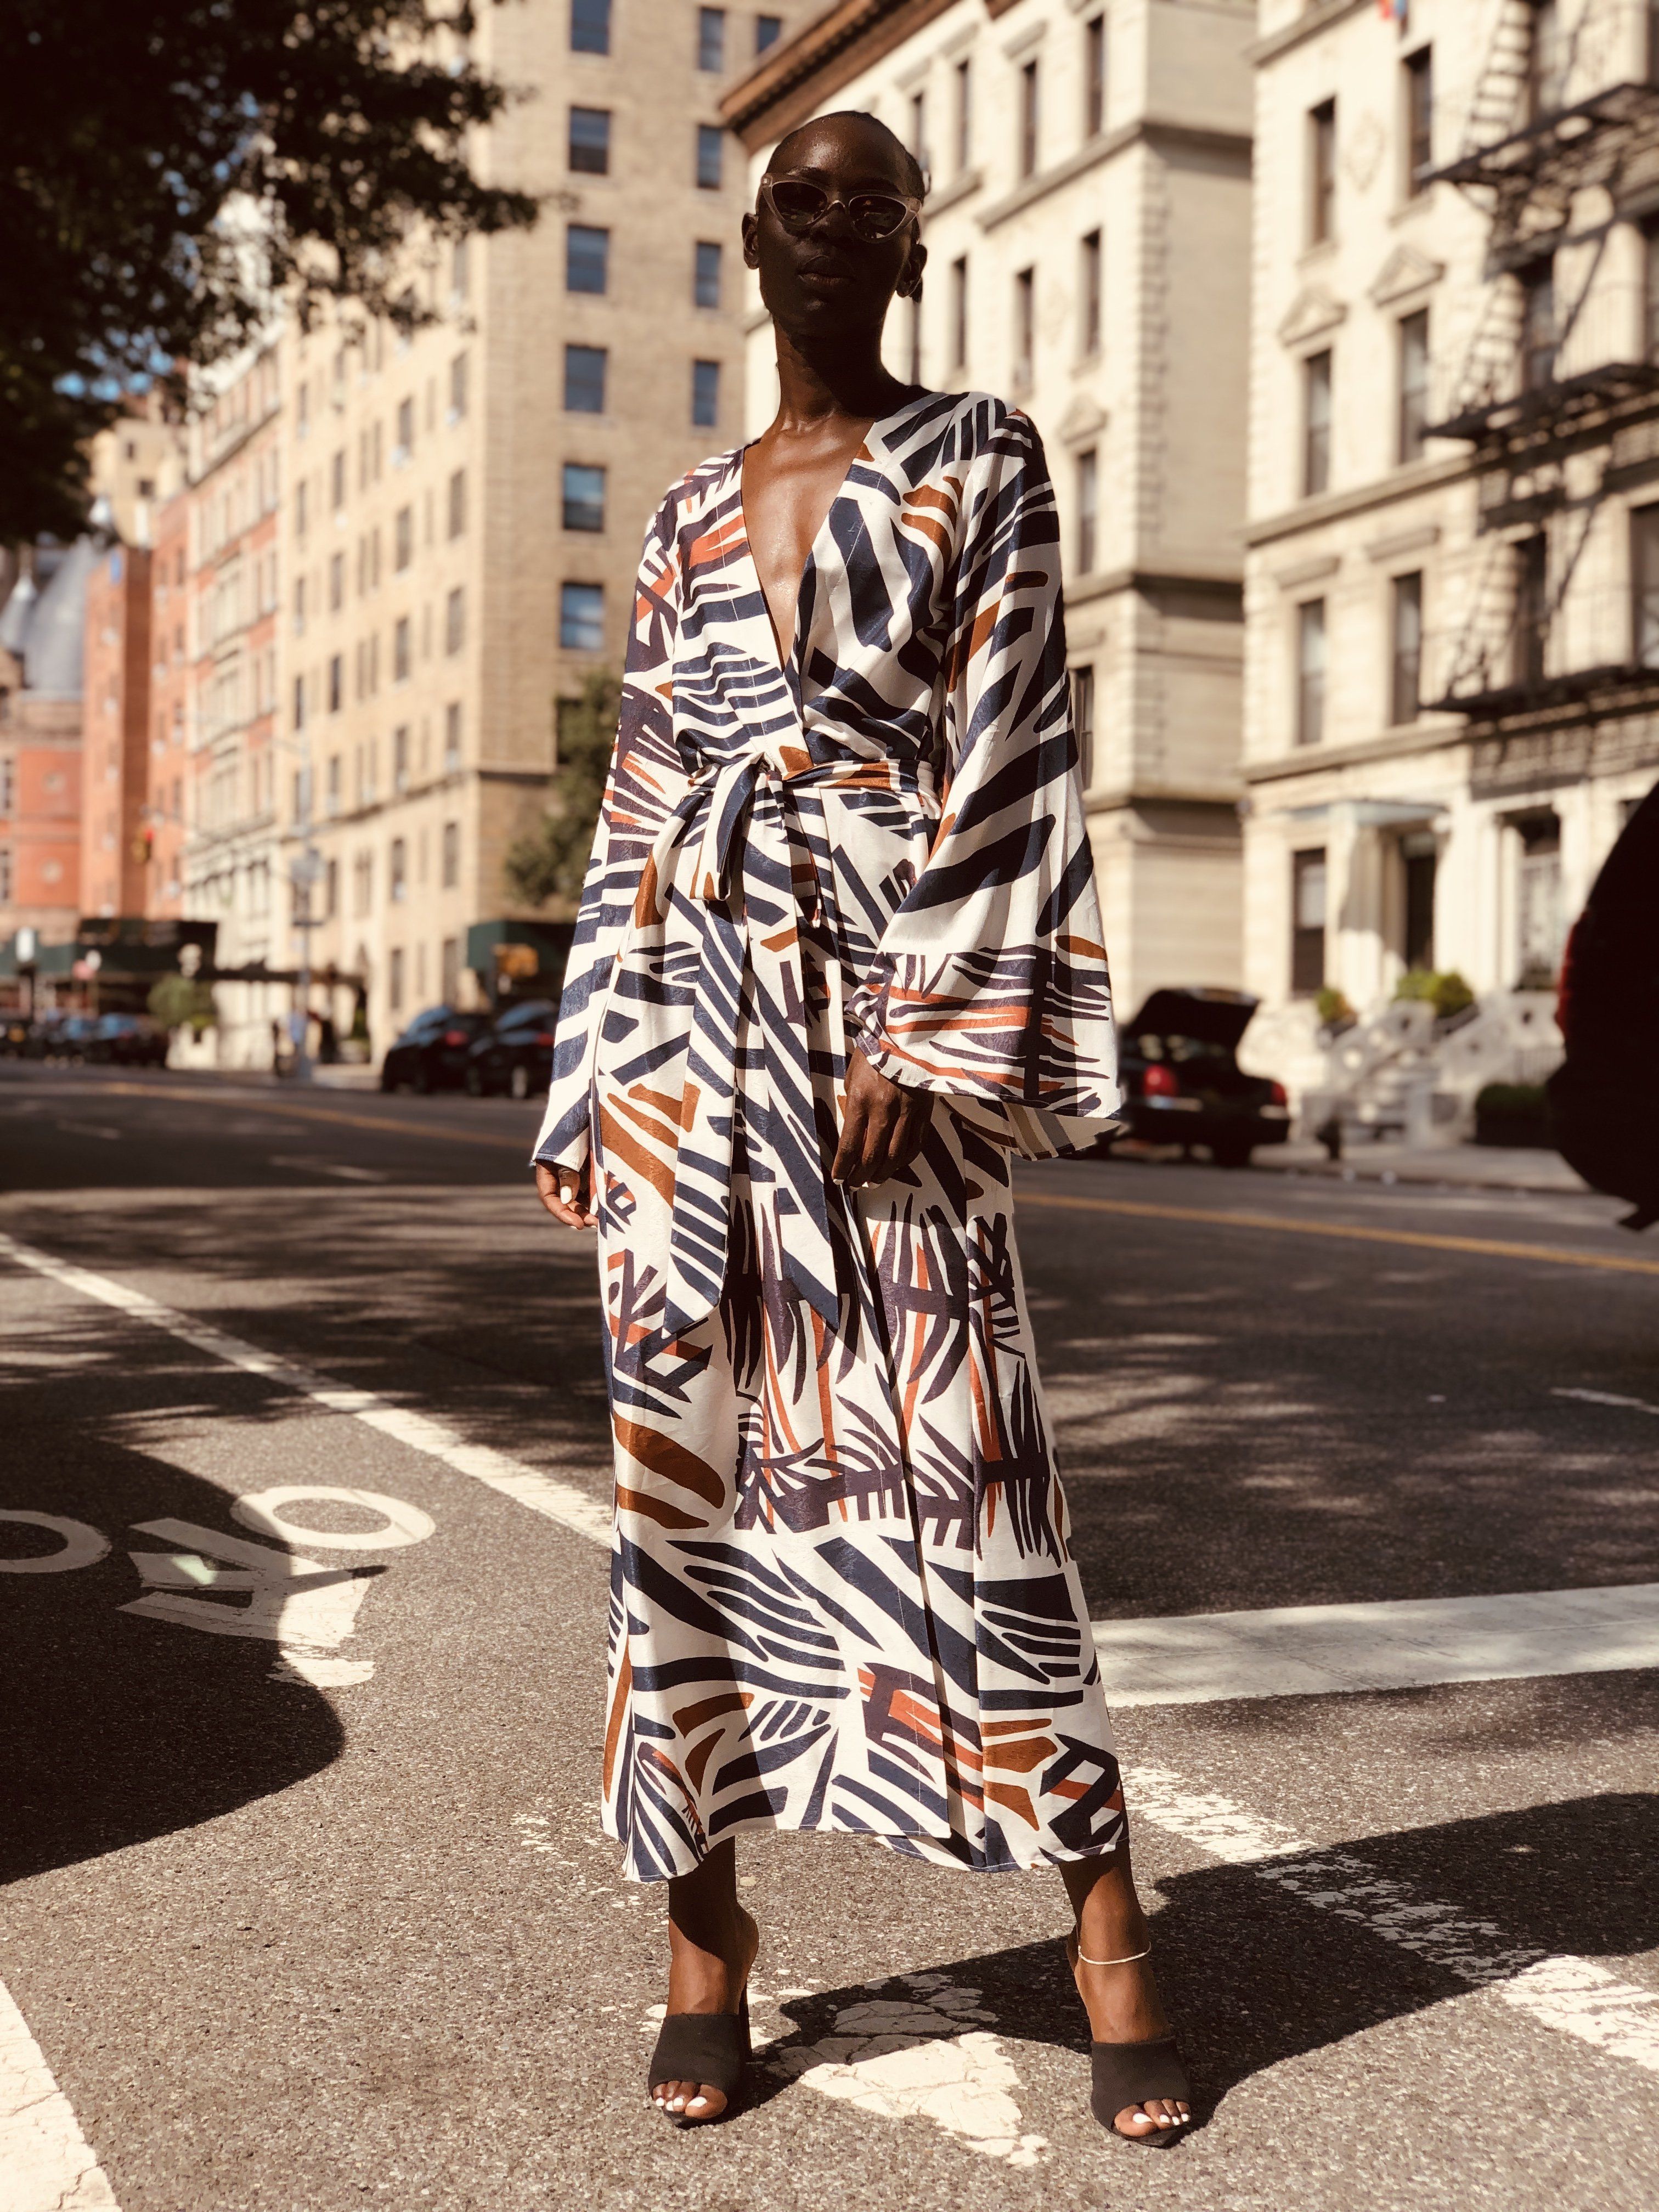 Zena Kimono - Zena Kimono -   17 strit style 2019 ideas